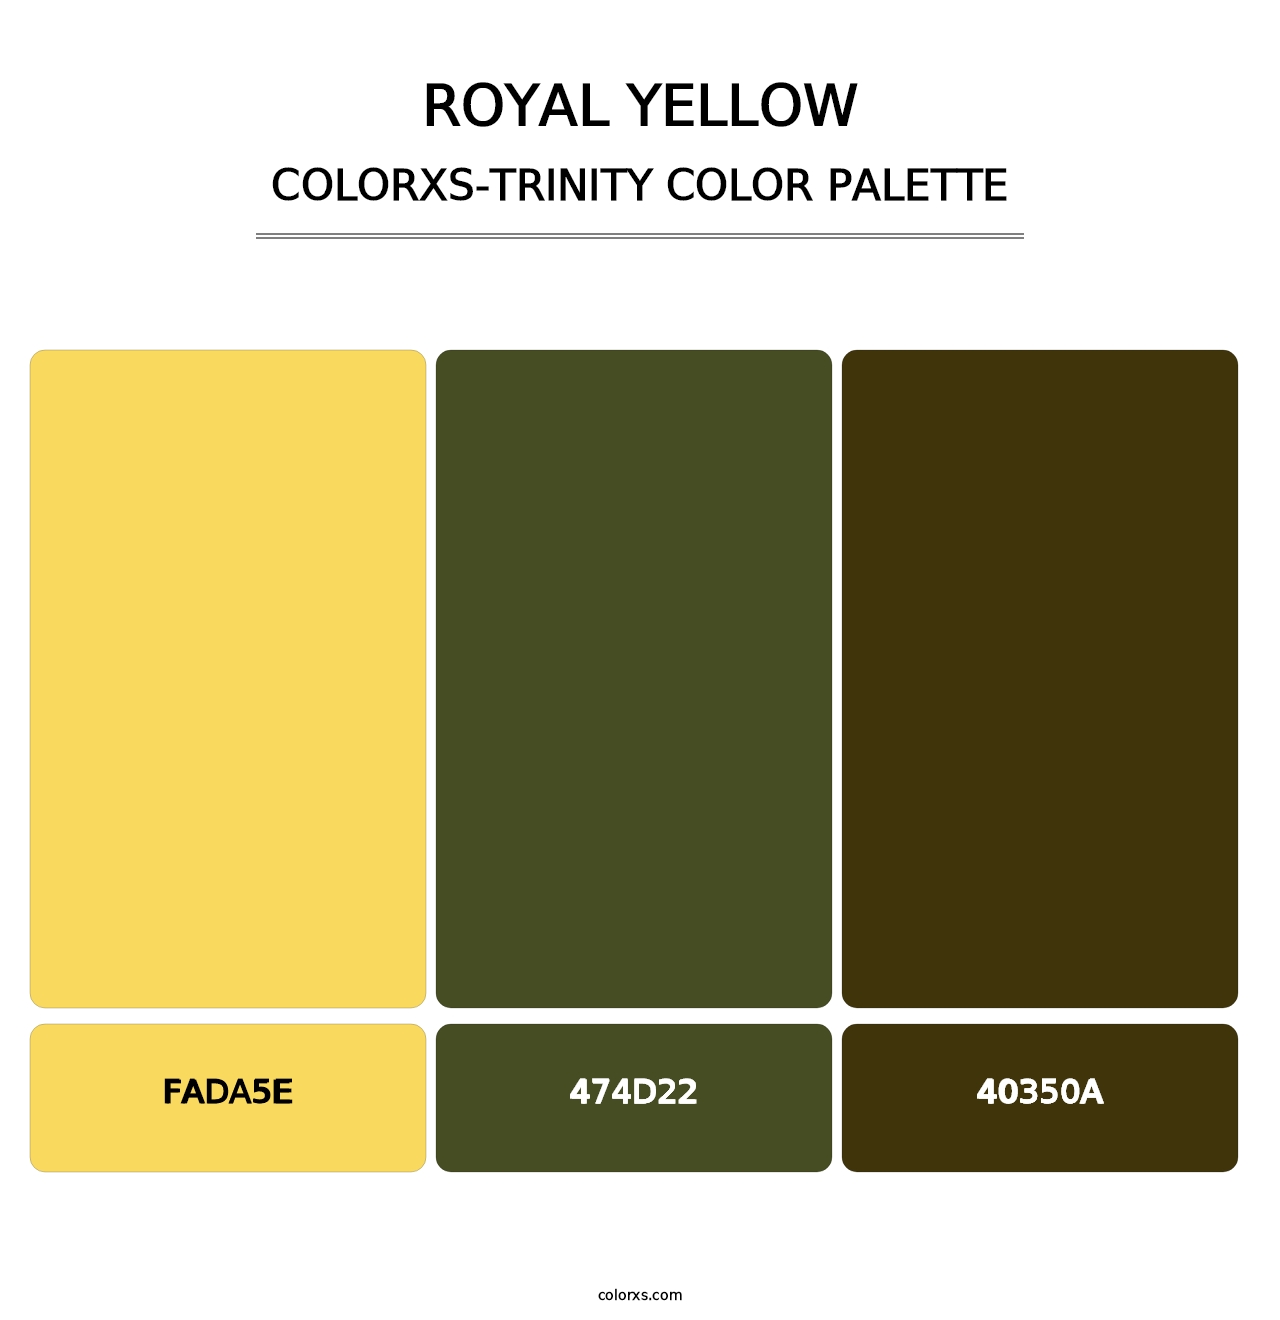 Royal Yellow - Colorxs Trinity Palette